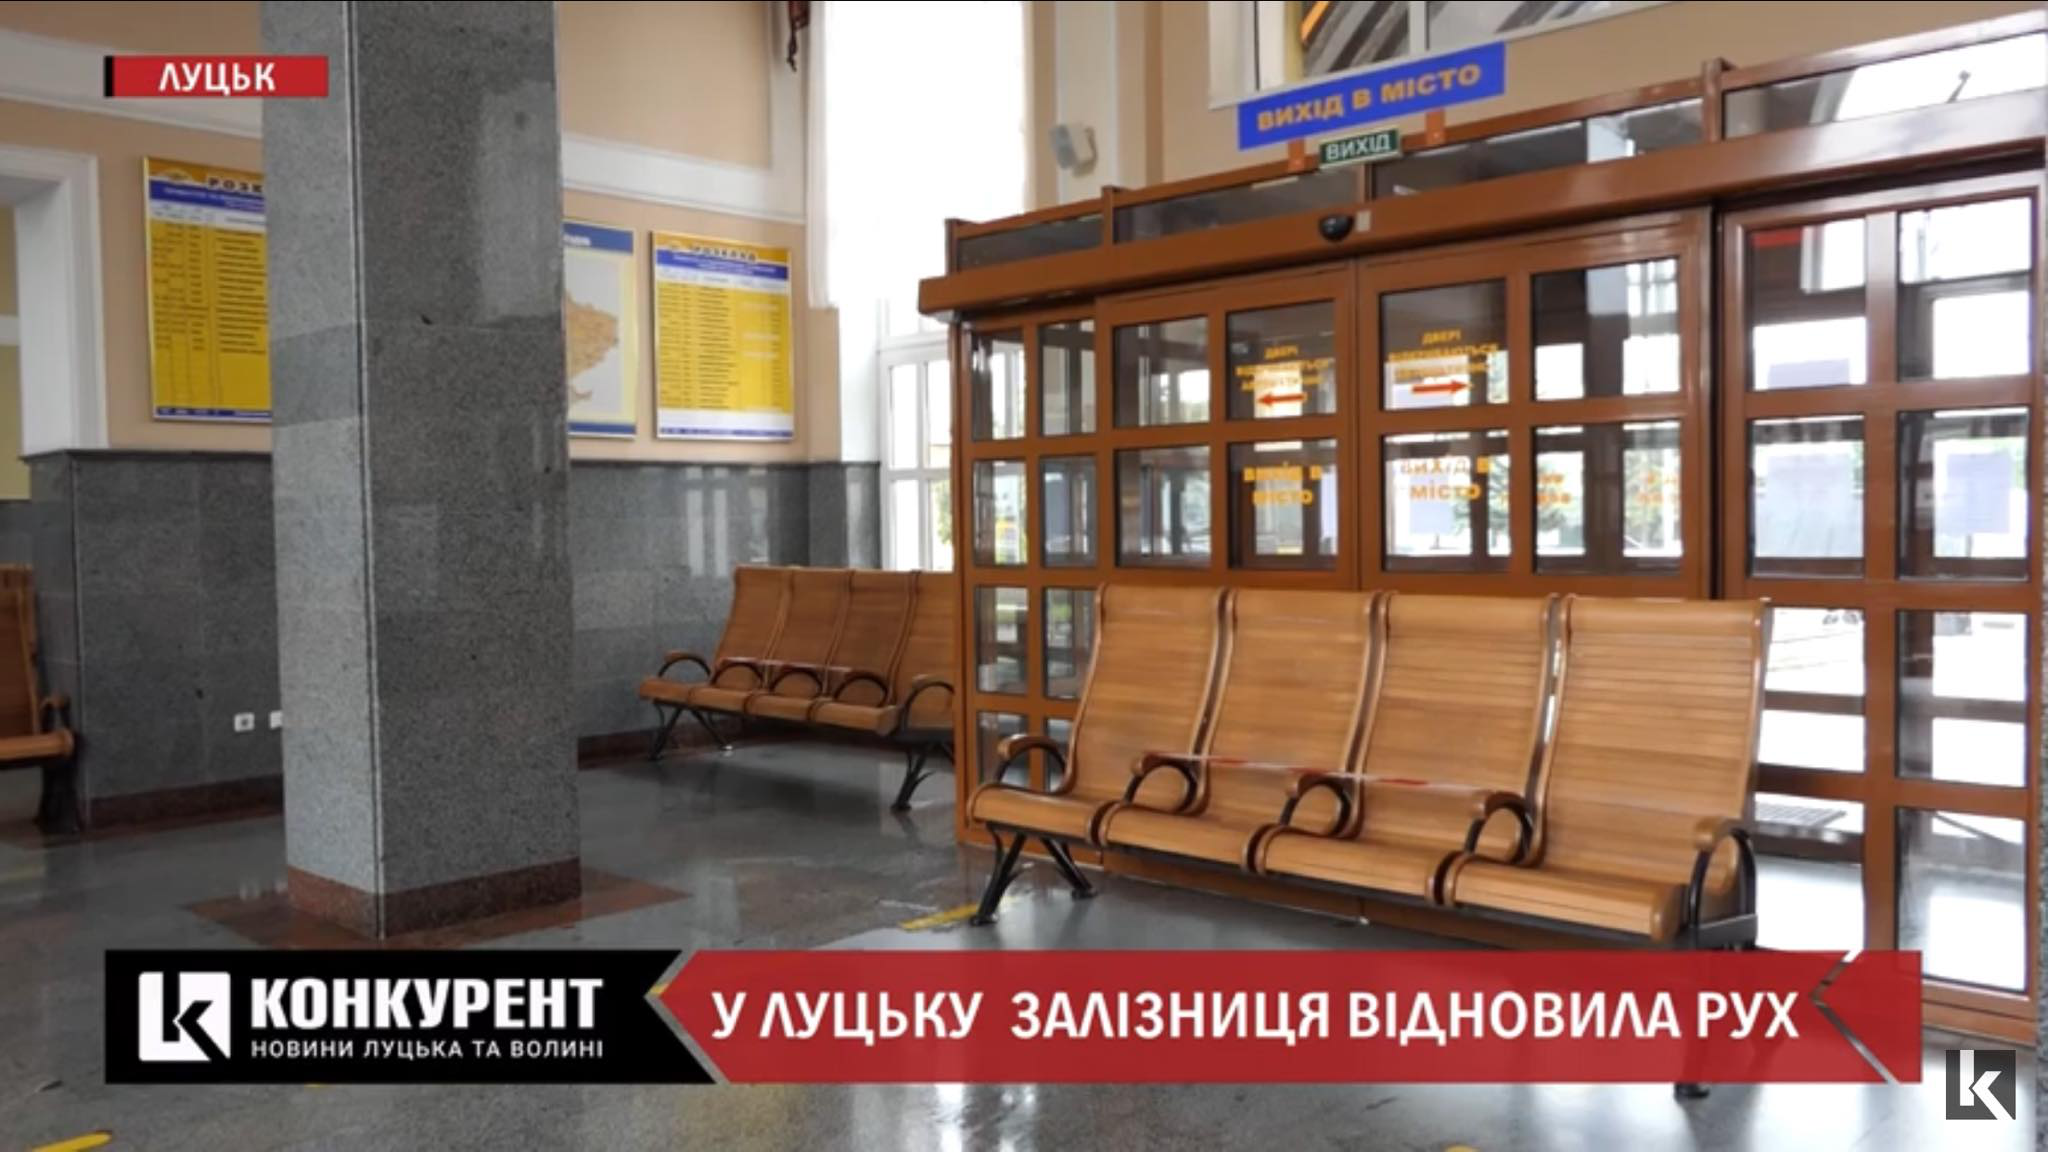 Залізничний вокзал у Луцьку відновив роботу: що змінилось